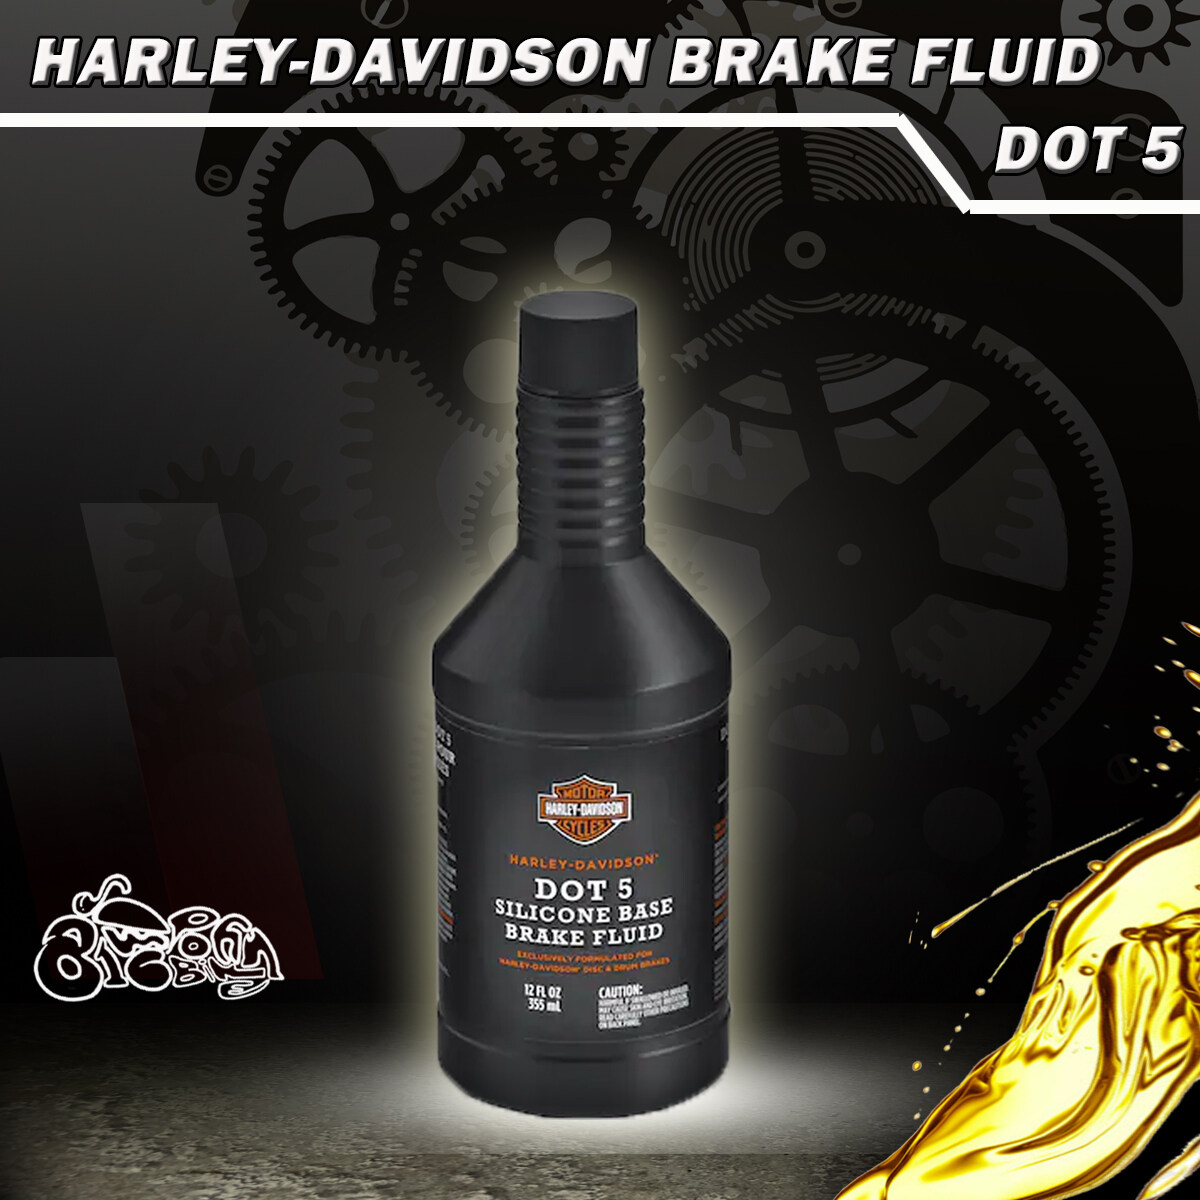 น้ำมันเบรค ฮาเลย์ เดวิดสัน ดอท 5 Brake Fluid Harley Davidson DOT5